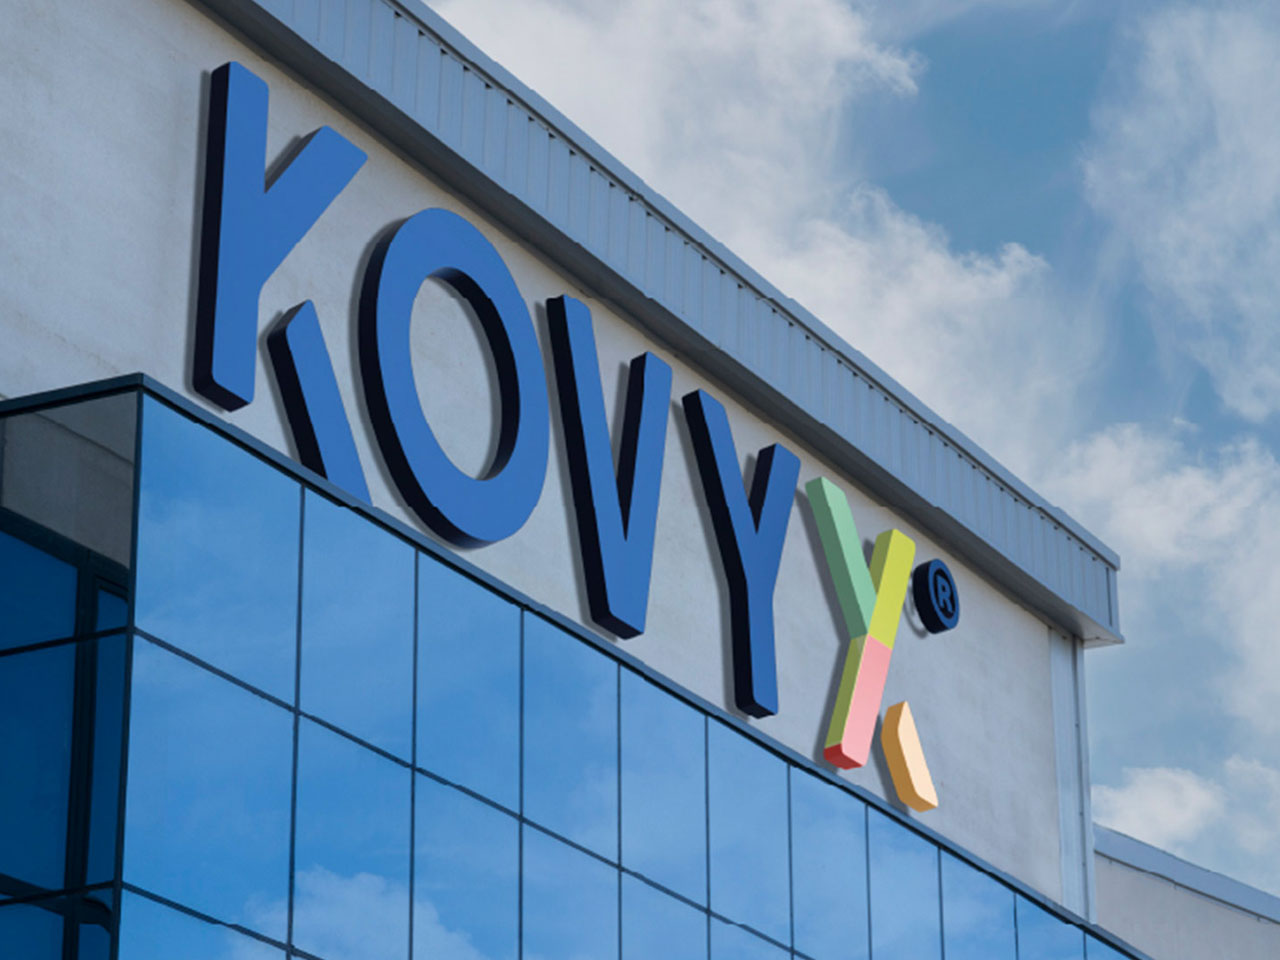 Bureaux de Kovyx